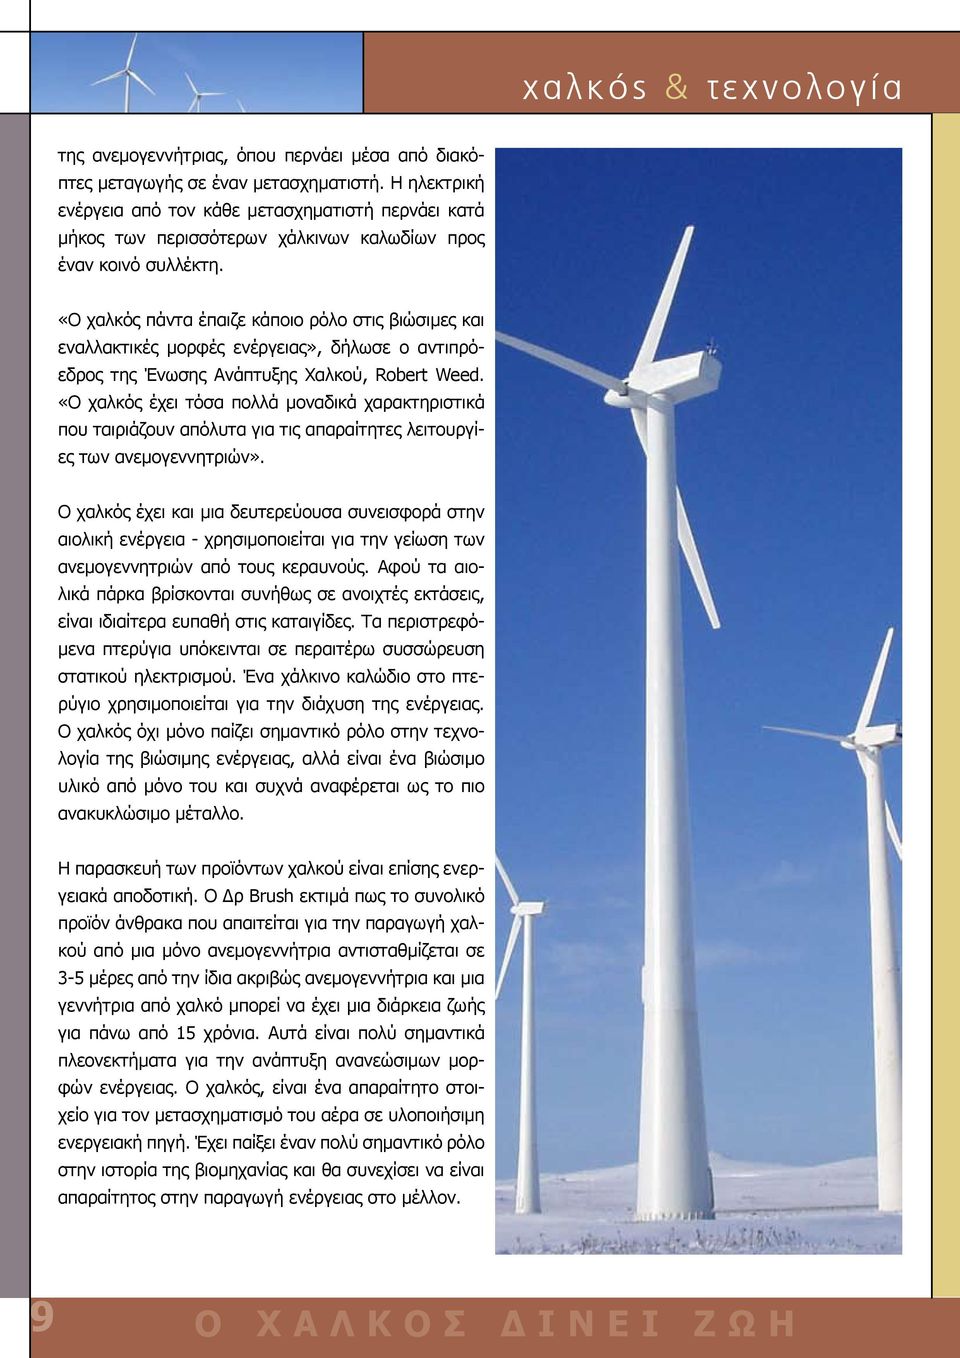 «Ο χαλκός πάντα έπαιζε κάποιο ρόλο στις βιώσιμες και εναλλακτικές μορφές ενέργειας», δήλωσε ο αντιπρόεδρος της Ένωσης Ανάπτυξης Χαλκού, Robert Weed.